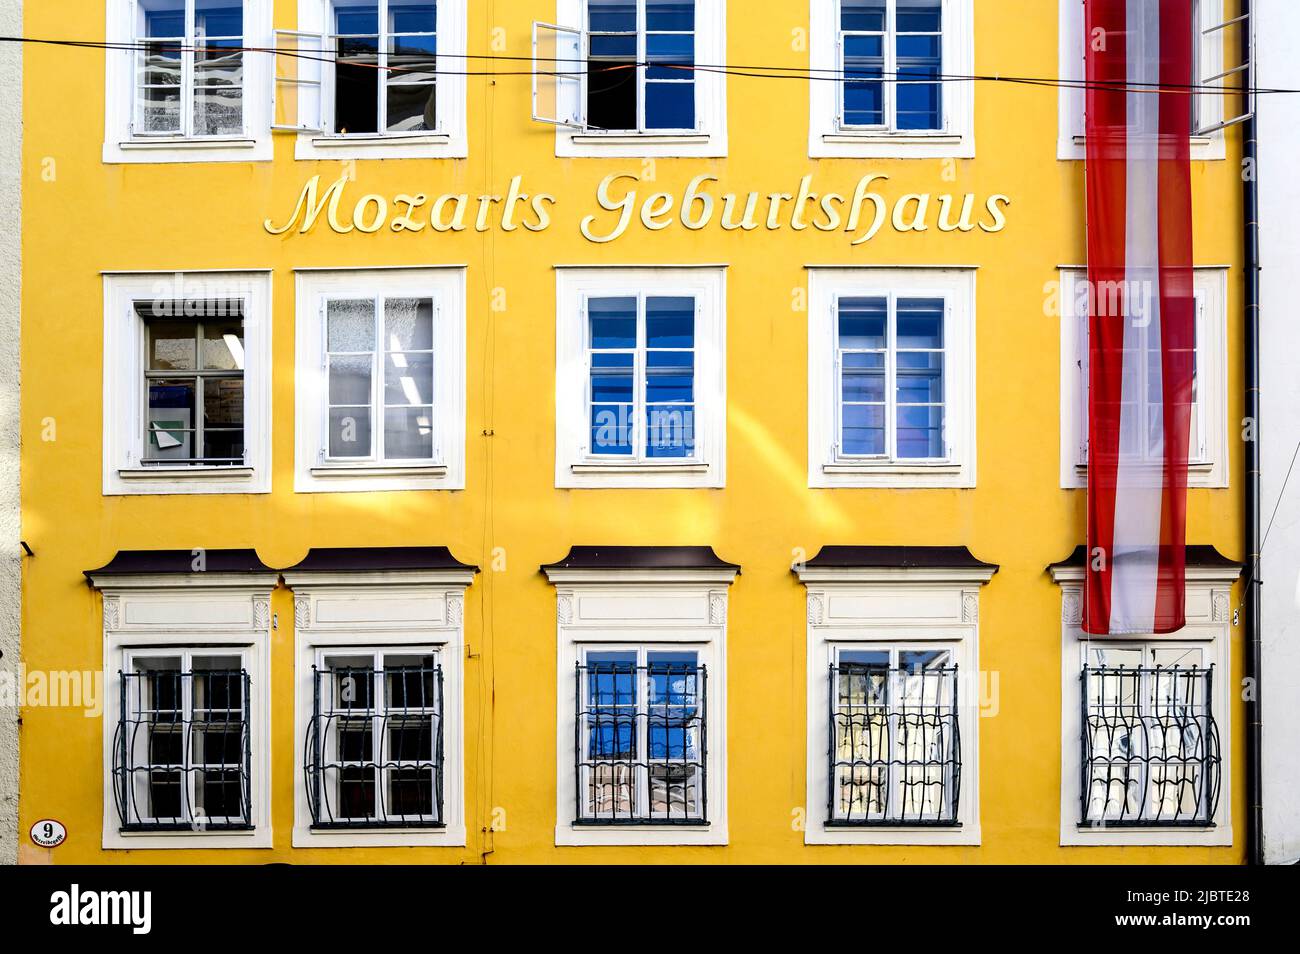 Austria, Salzburg, Mozart's birth house on Getreidegasse, old town Stock Photo